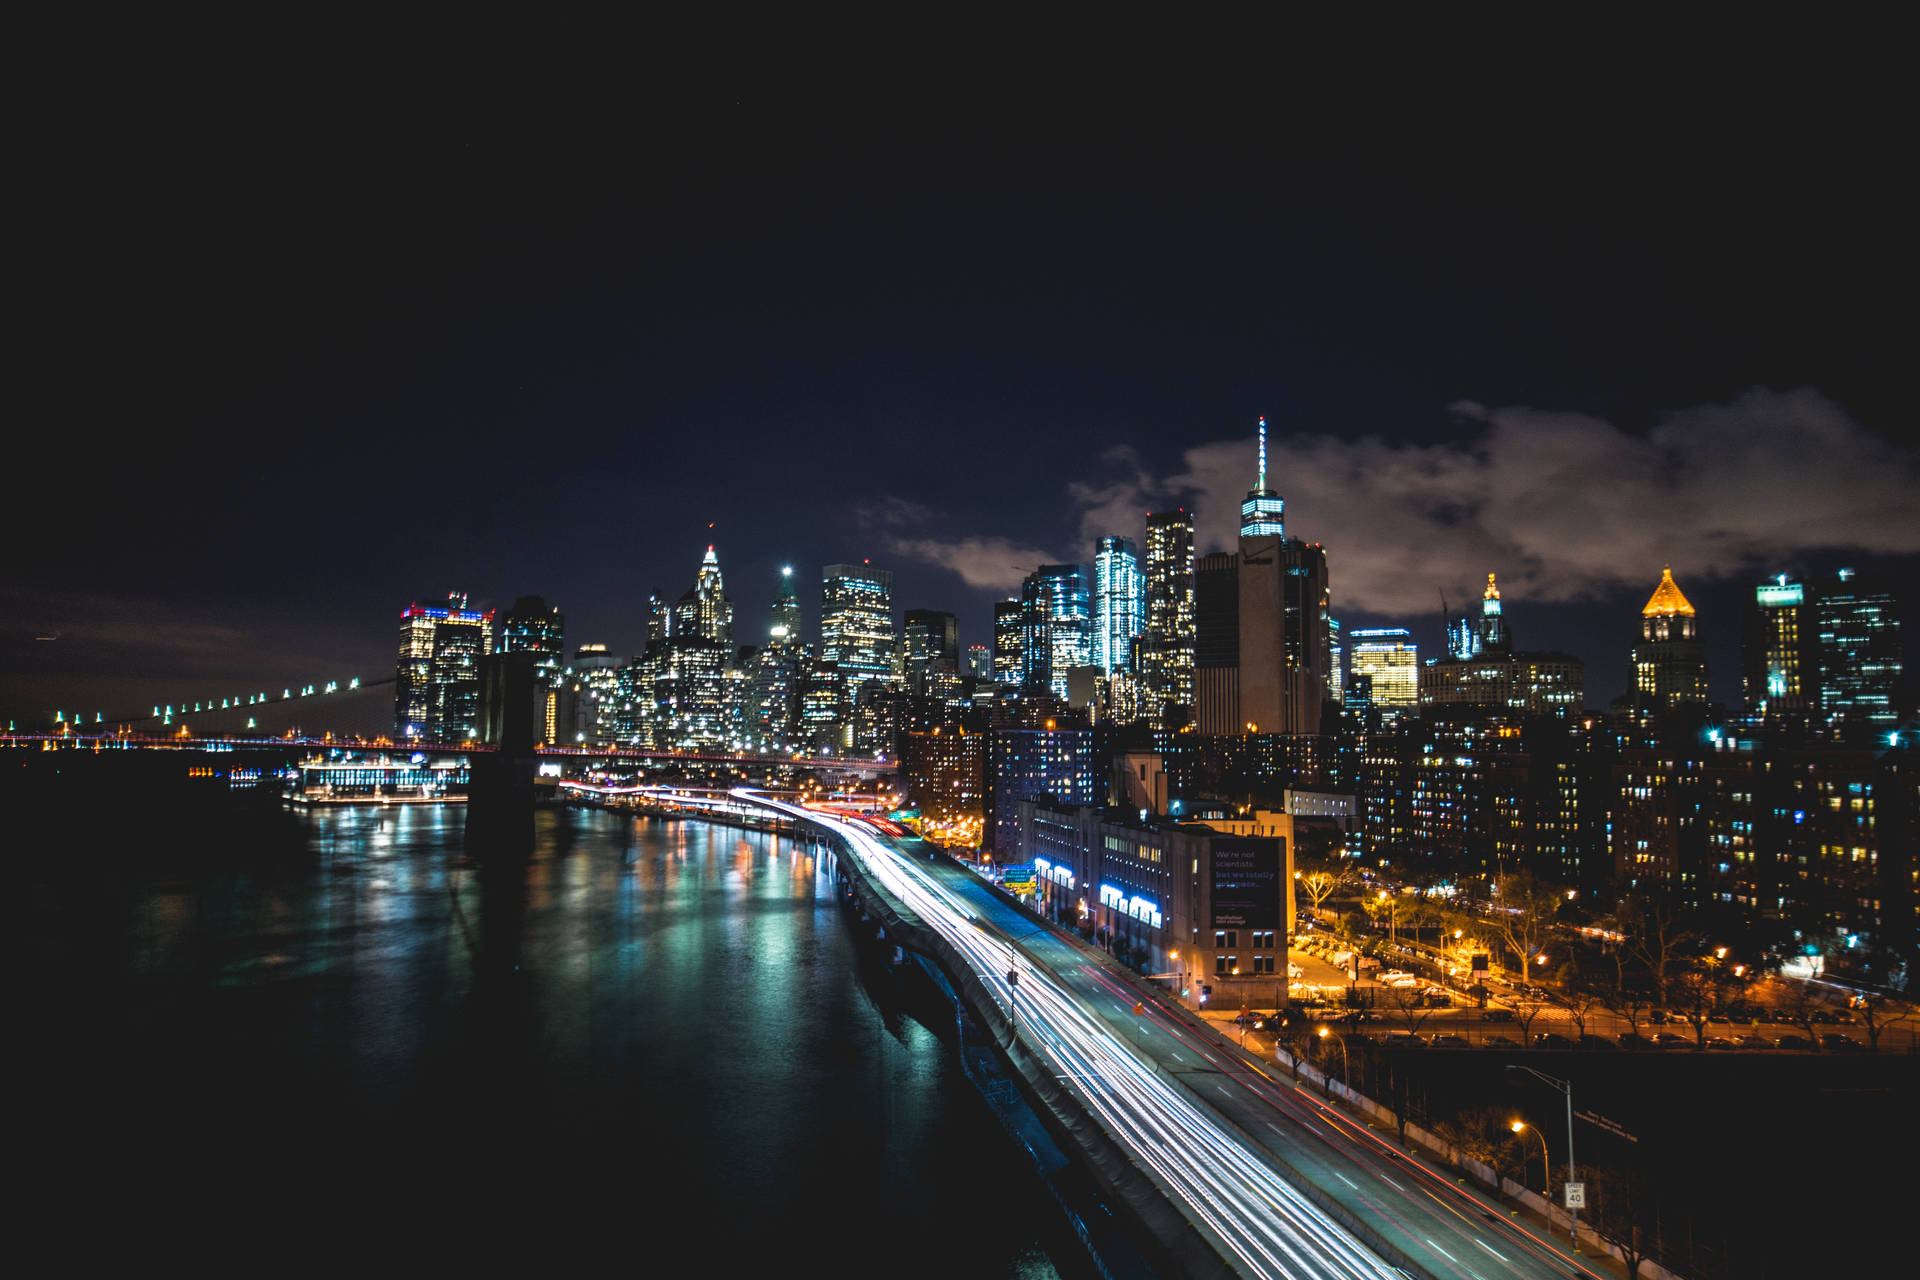 Fondode Pantalla En Time-lapse De La Vista Nocturna De La Ciudad De Nueva York. Fondo de pantalla